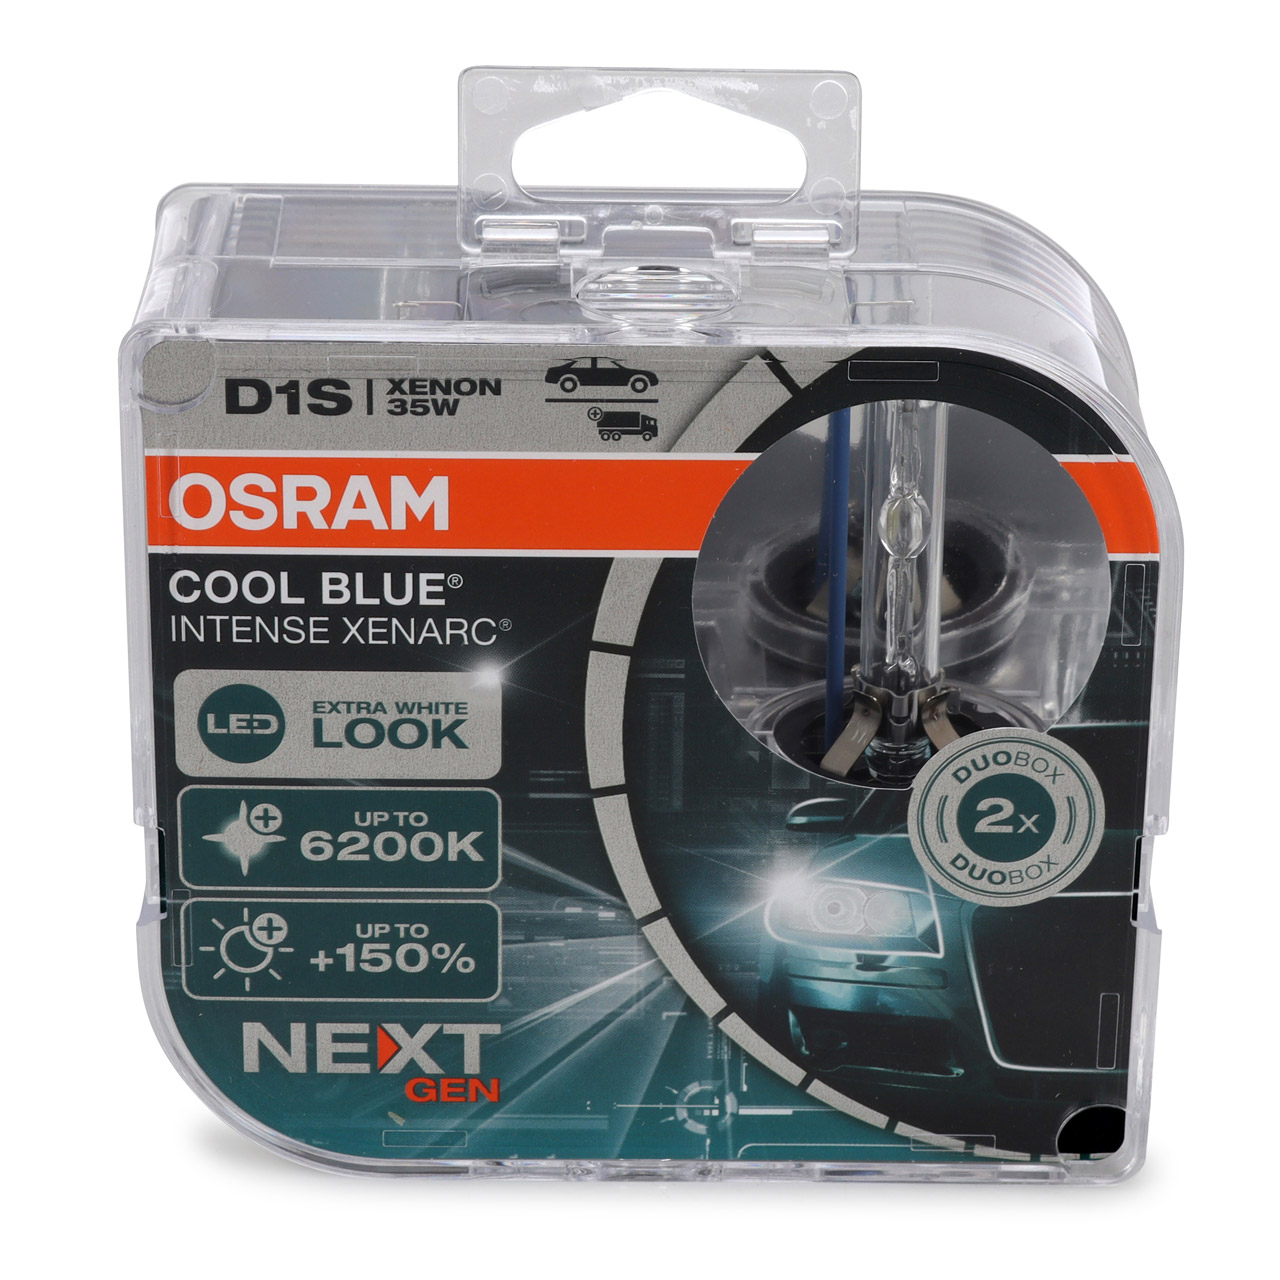 2x OSRAM Xenon Lampe D1S COOL BLUE INTENSE XENARC Next Gen 85V 35W +150% 6200K